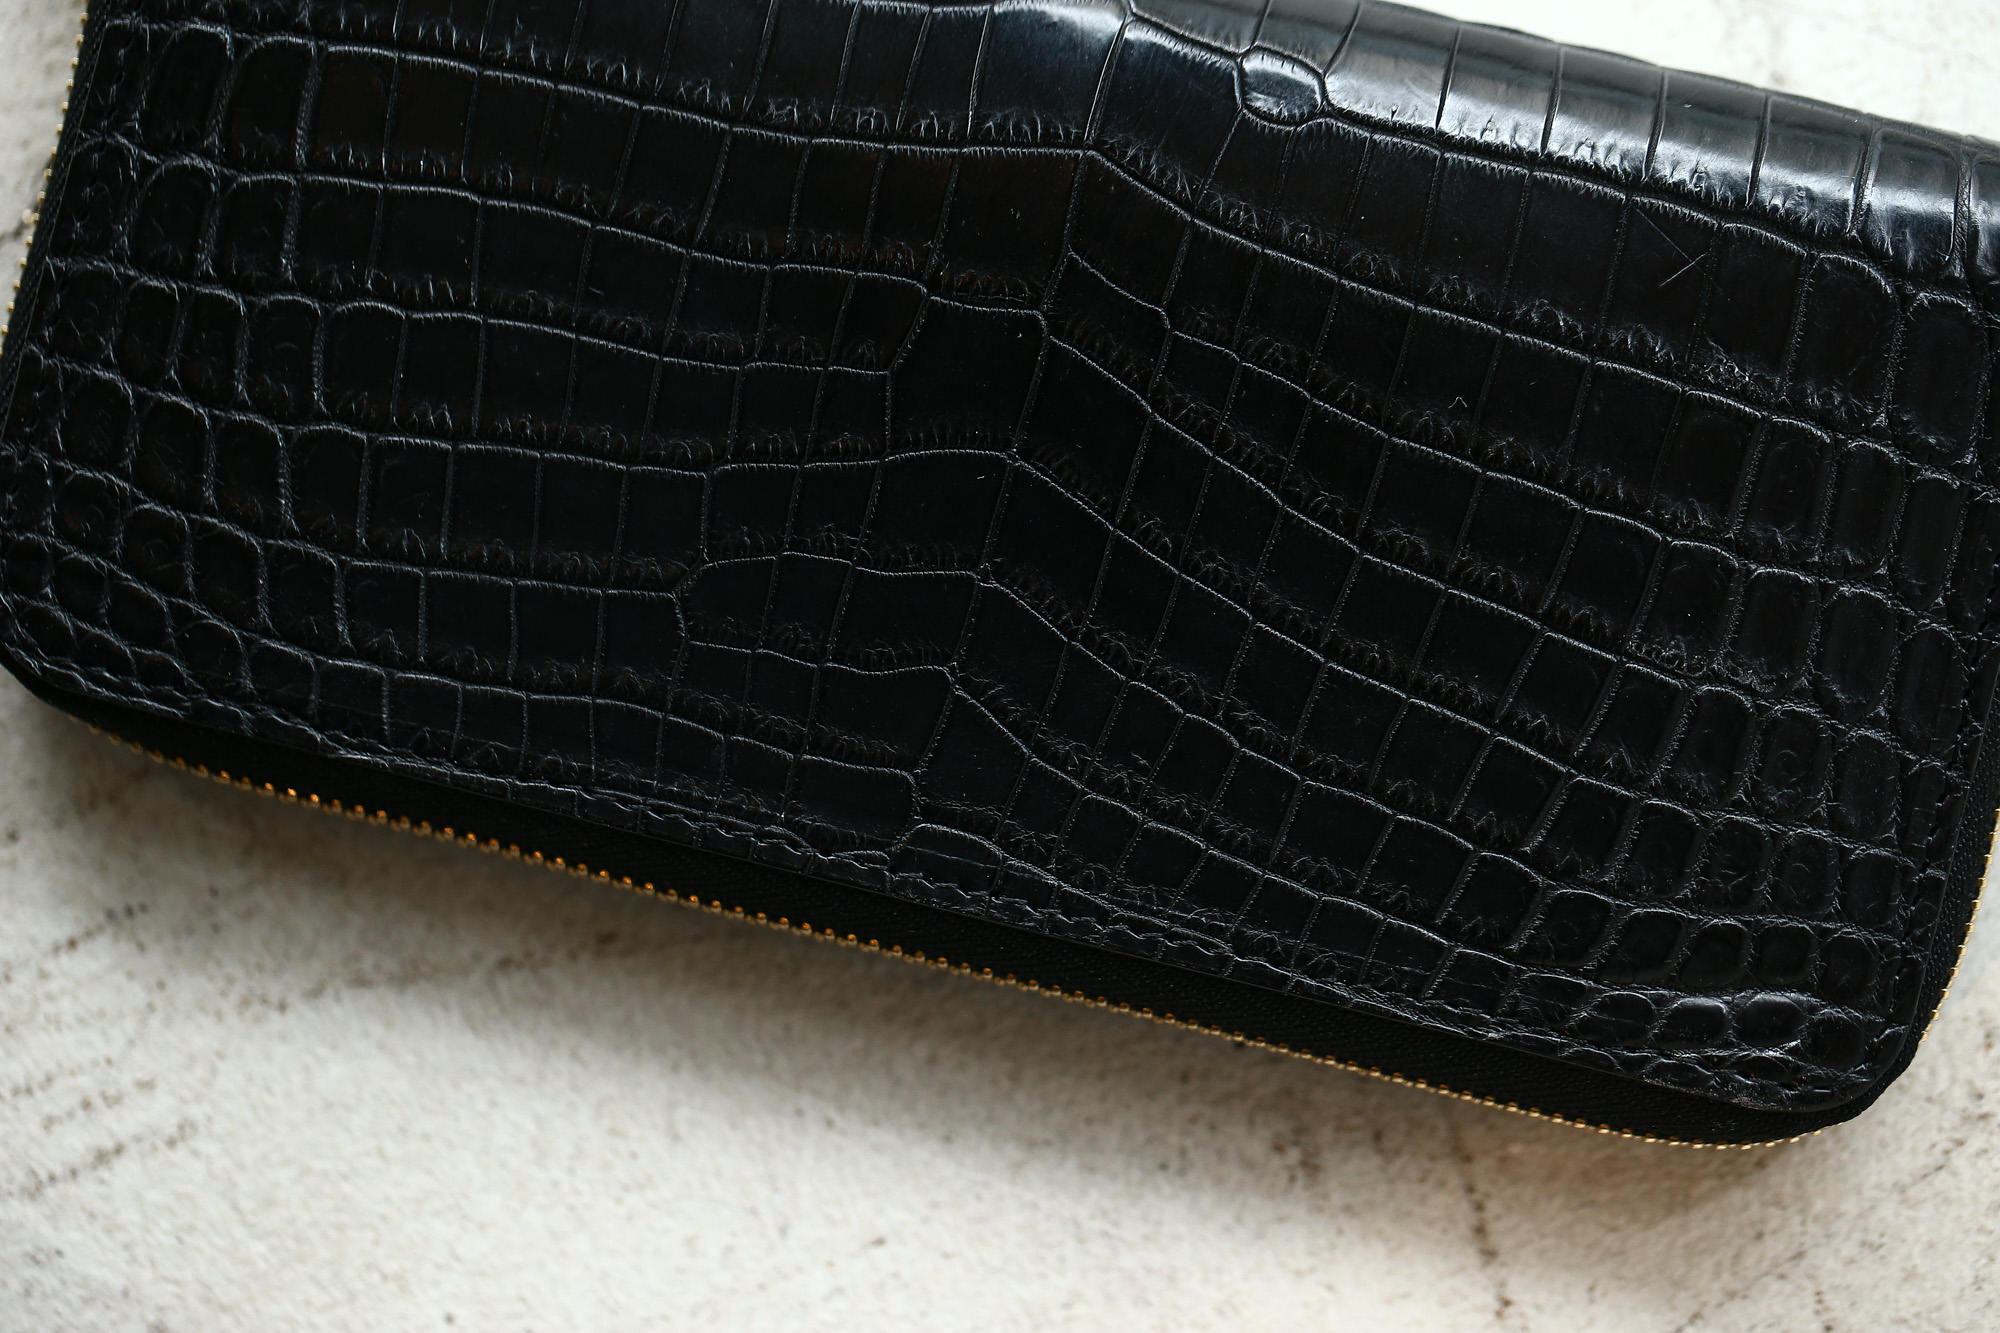 Cisei × 山本製鞄 (シセイ × 山本製鞄) Crocodile Long Wallet (クロコダイル ロング ウォレット) Nile Crocodile Leather (ワニ革) ナイル クロコダイル ウォレット 長財布 BLACK(ブラック),NAVY(ネイビー),BROWN(ブラウン) Made in Japan (日本製)  cisei yamamotoseiho トートバック クロコ 愛知 名古屋 Alto e Diritto アルト エ デリット